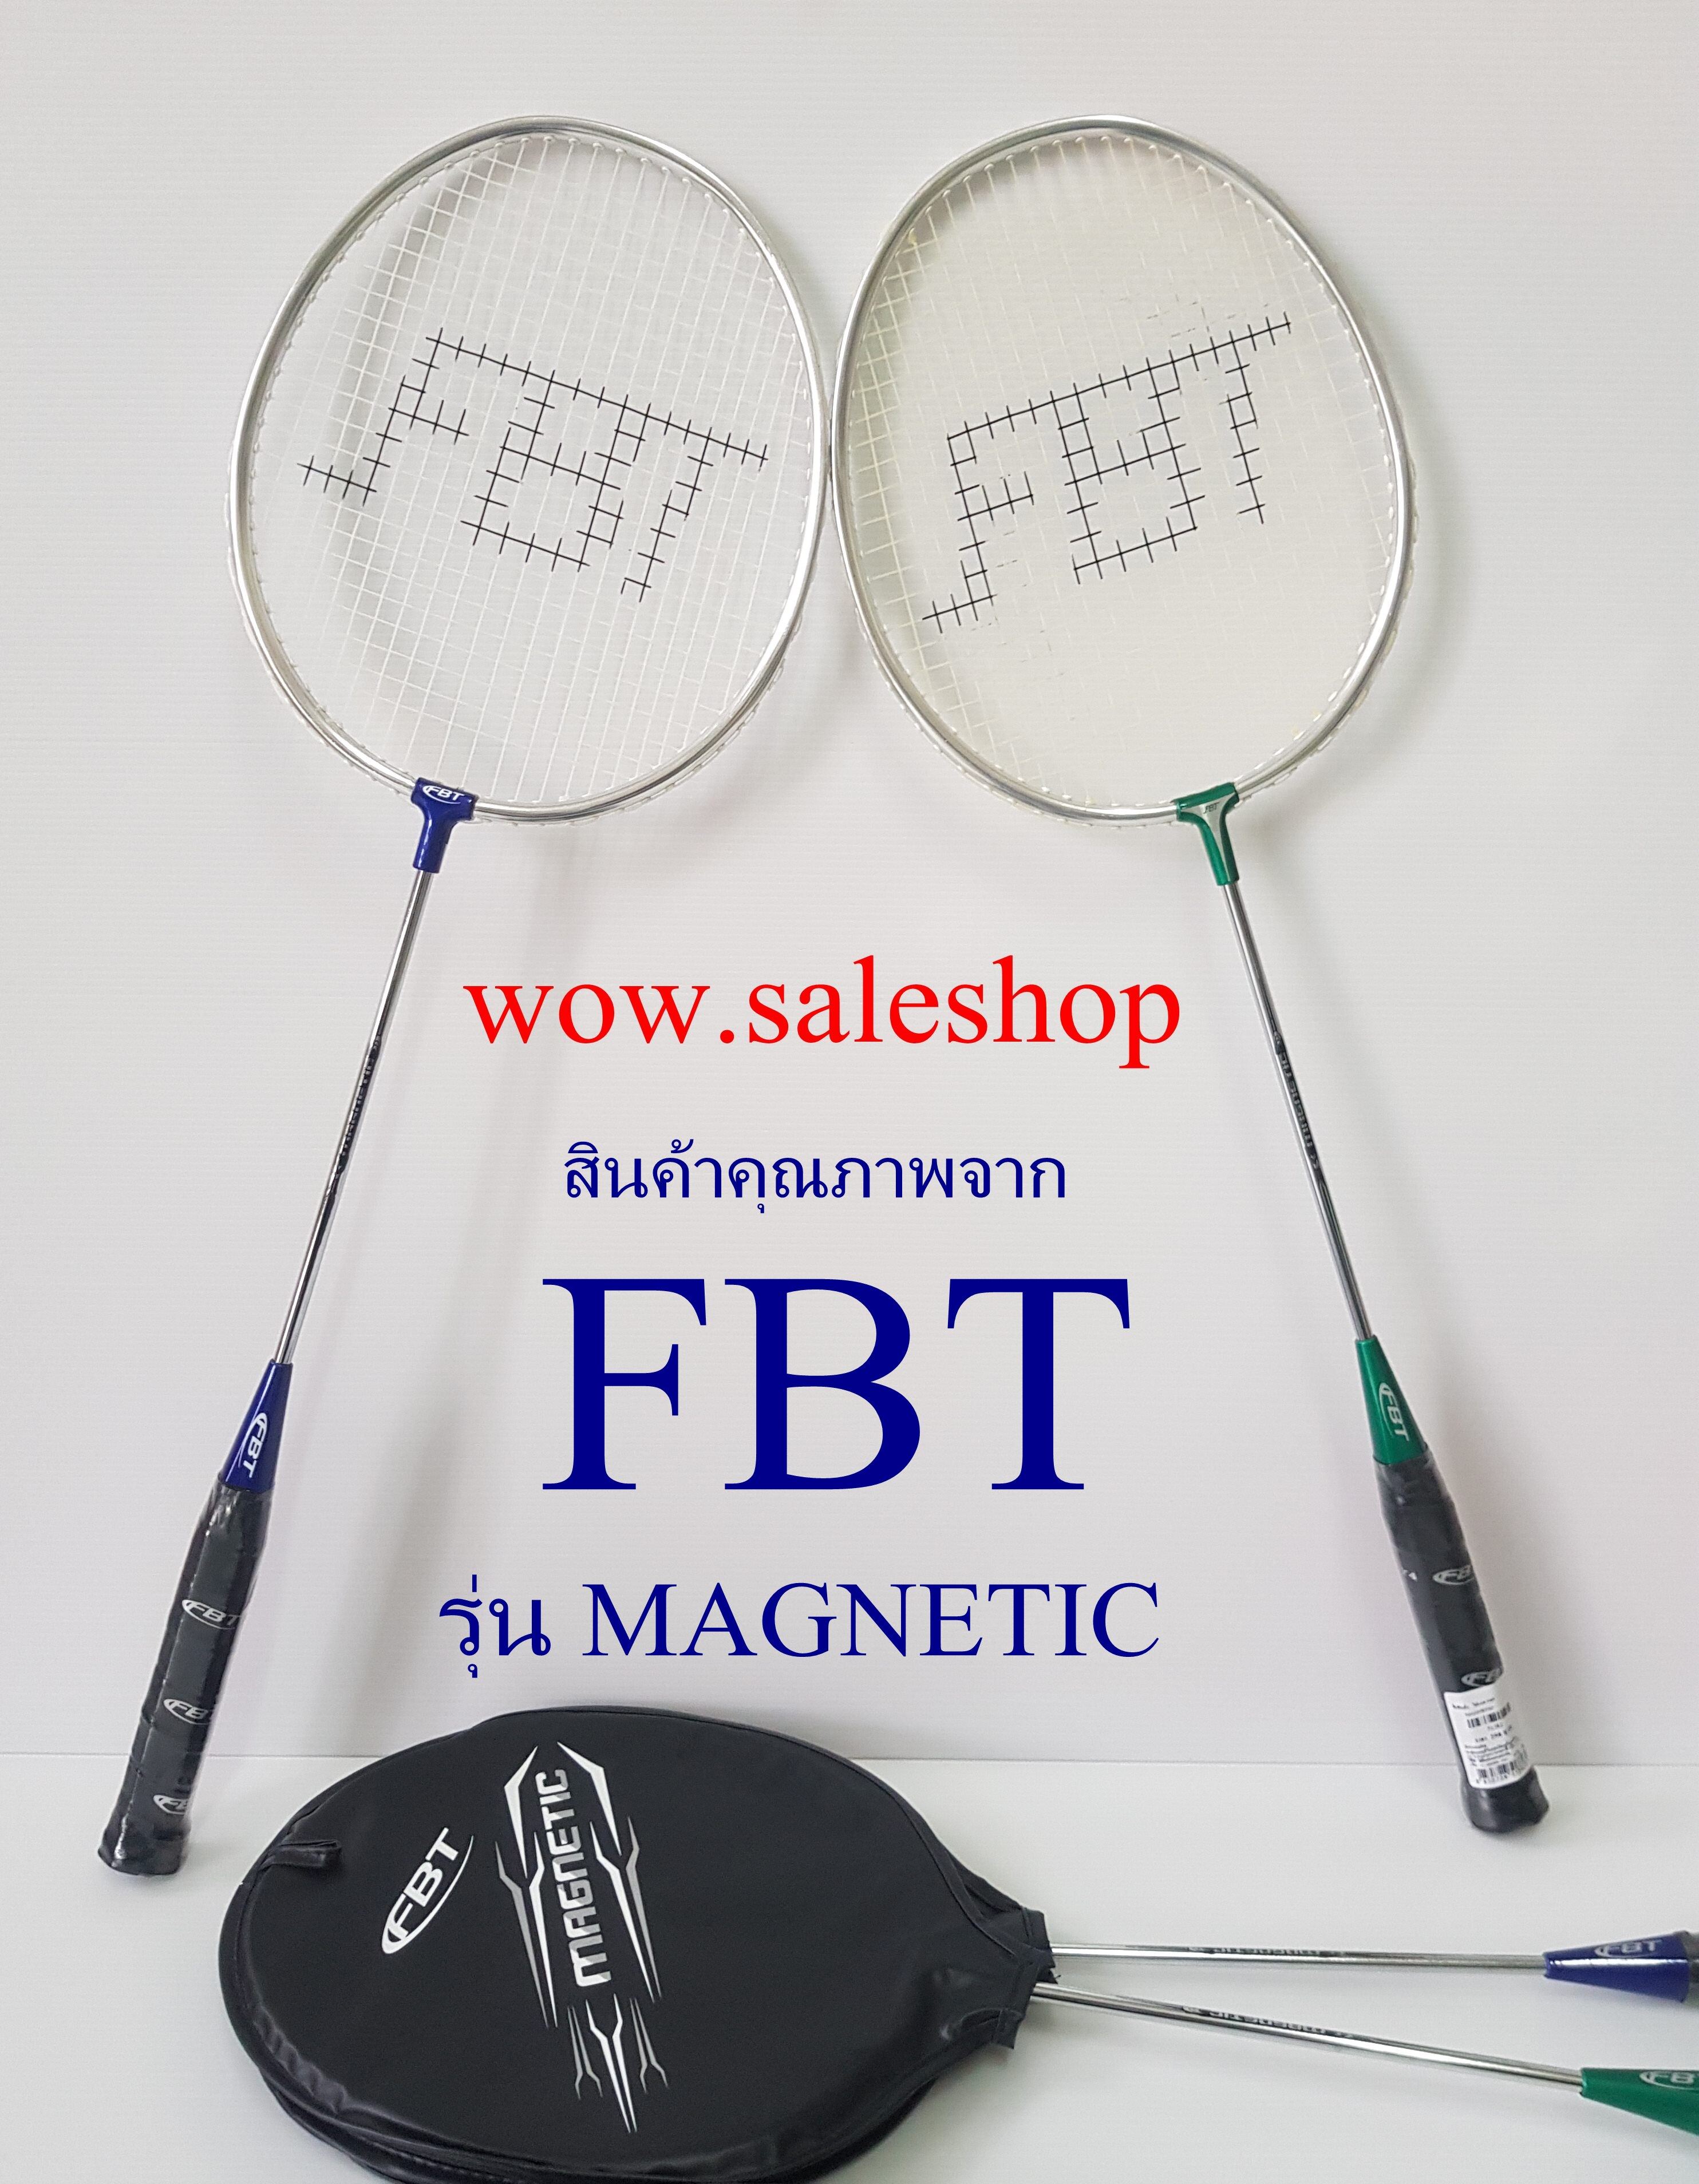 ไม้แบด fbt รุ่น MAGNETIC ไม้แบดมินตัน fbt ไม้แบด Badminton racket